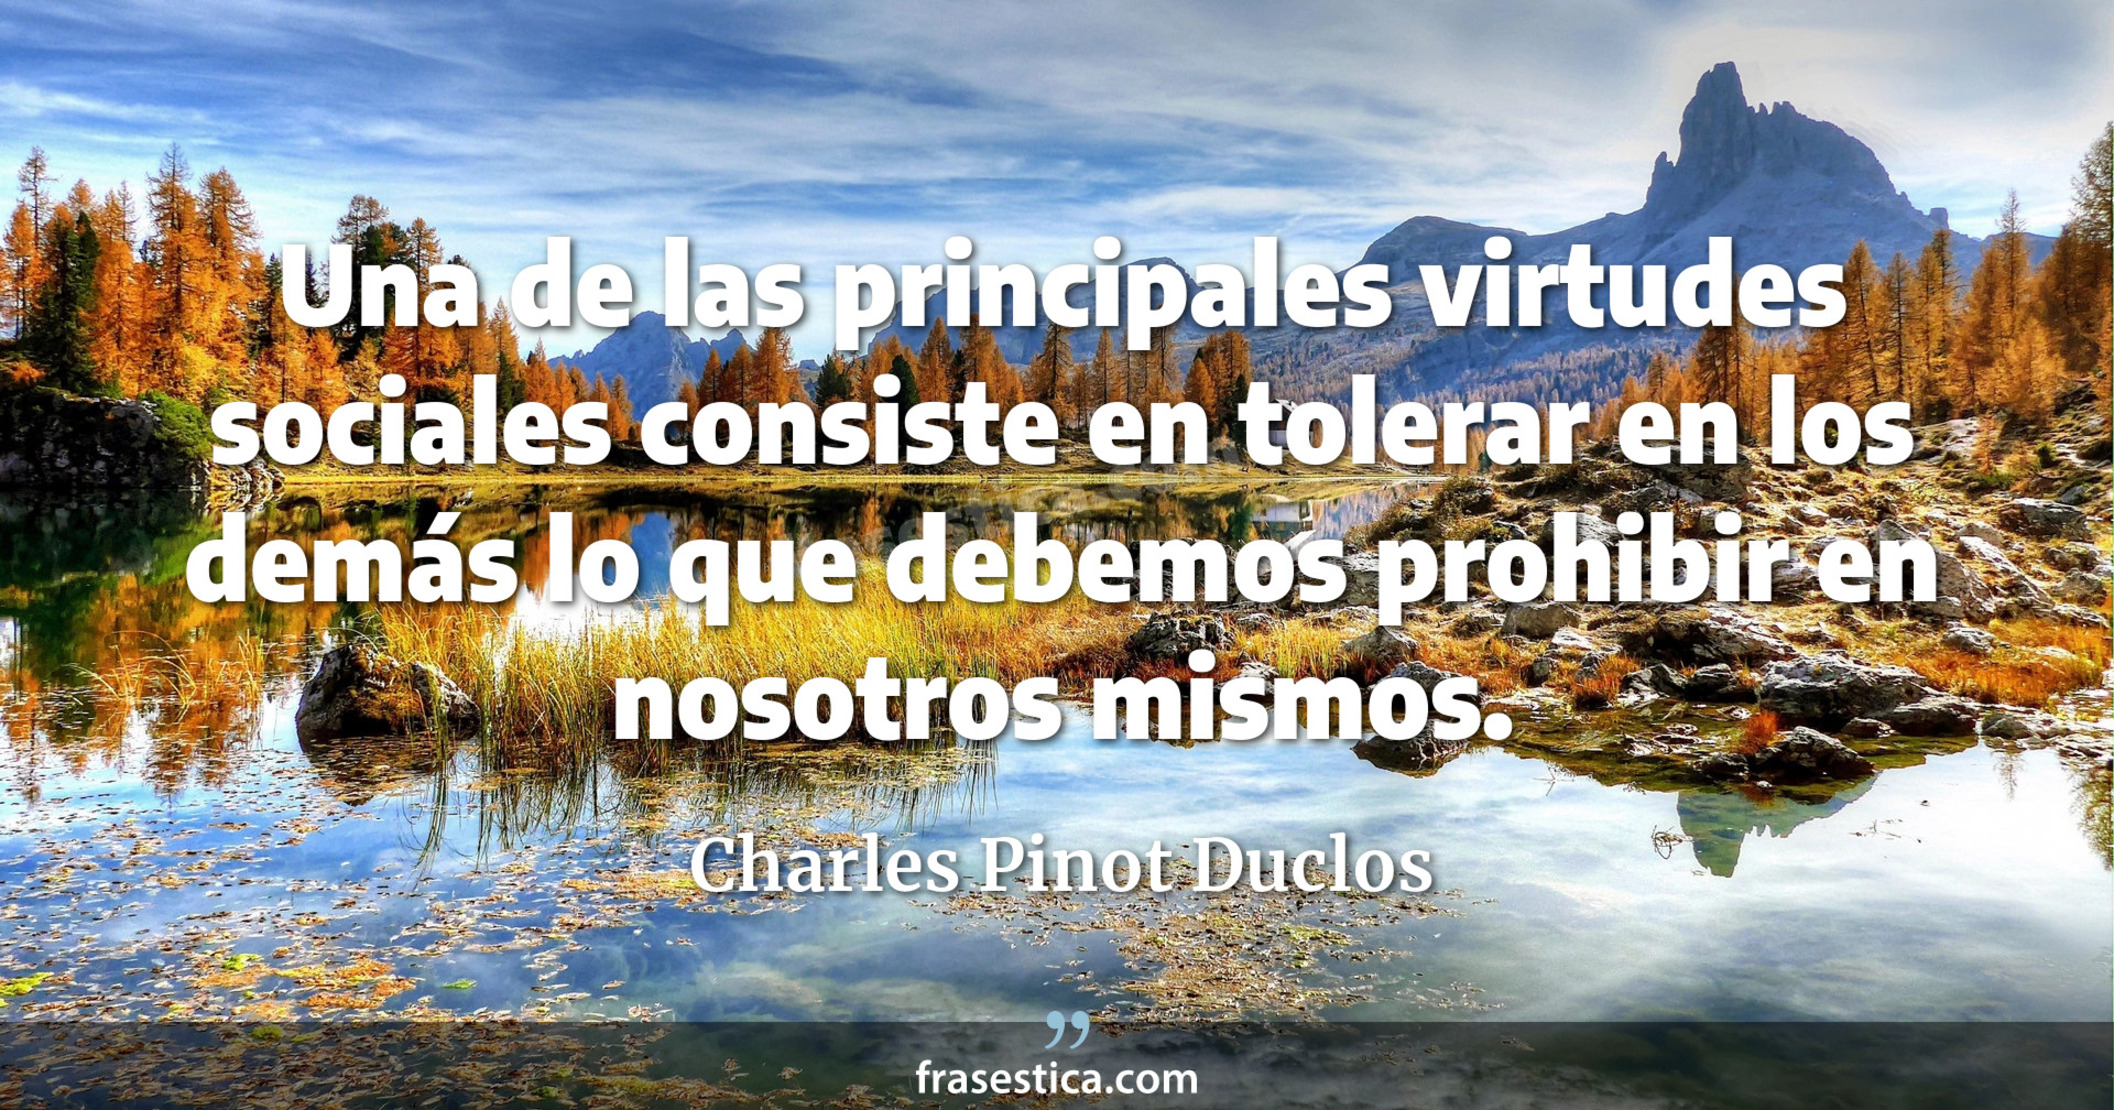 Una de las principales virtudes sociales consiste en tolerar en los demás lo que debemos prohibir en nosotros mismos. - Charles Pinot Duclos